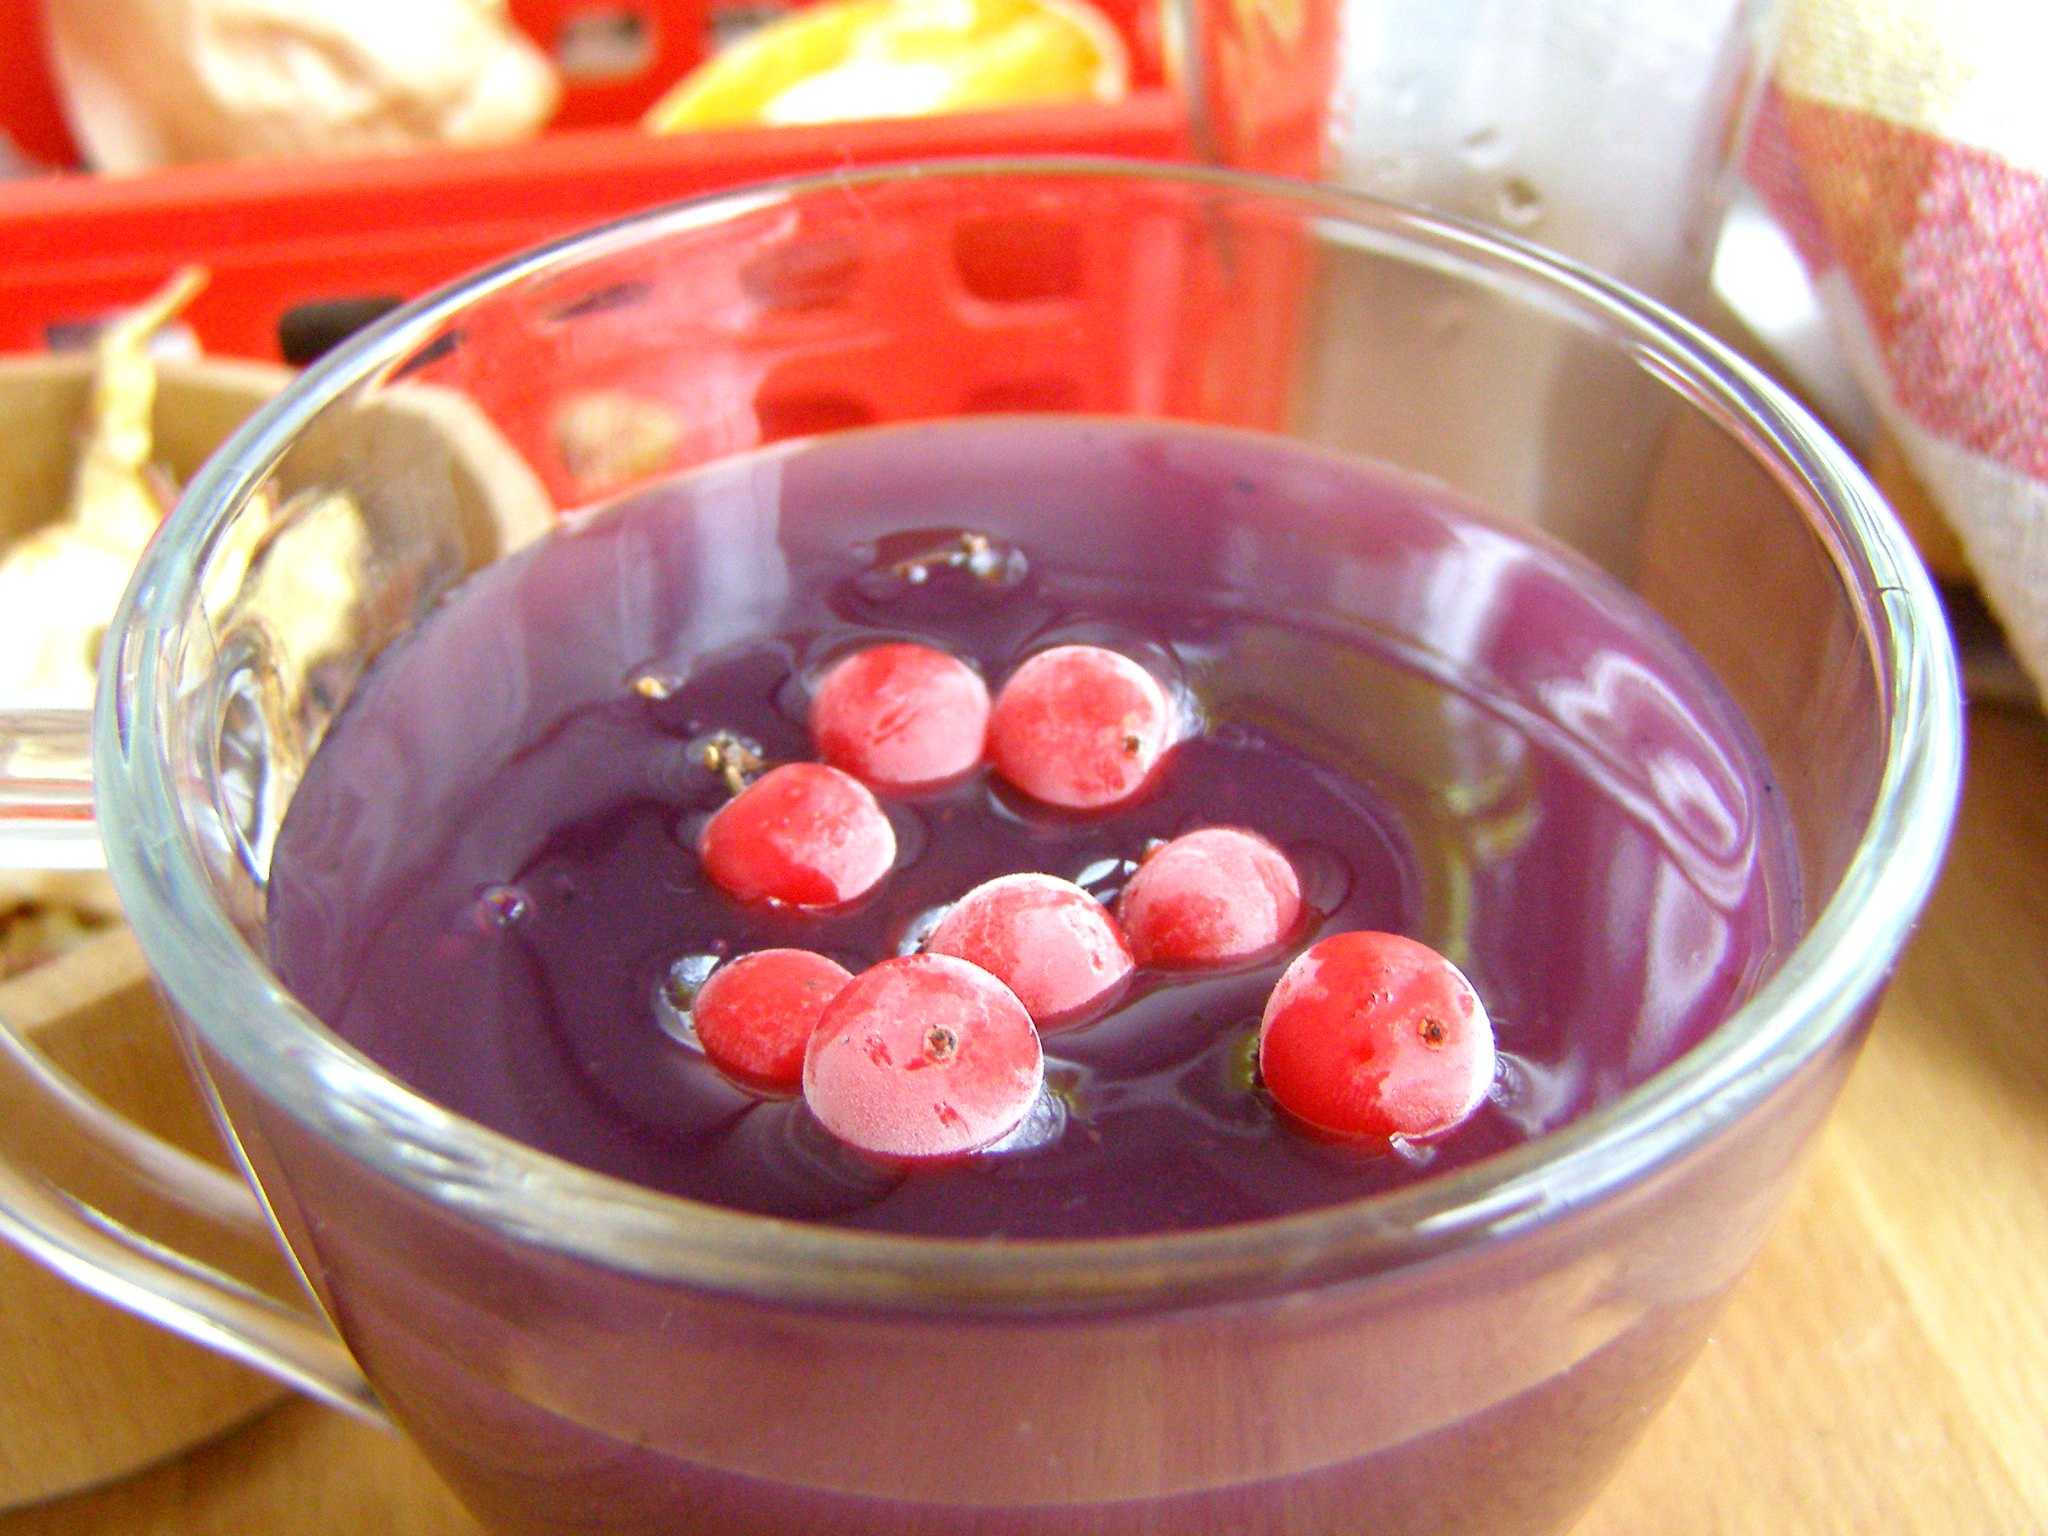 Как приготовить кисель из замороженных ягод: рецепты из клюквы, смородины, вишни (с видео)